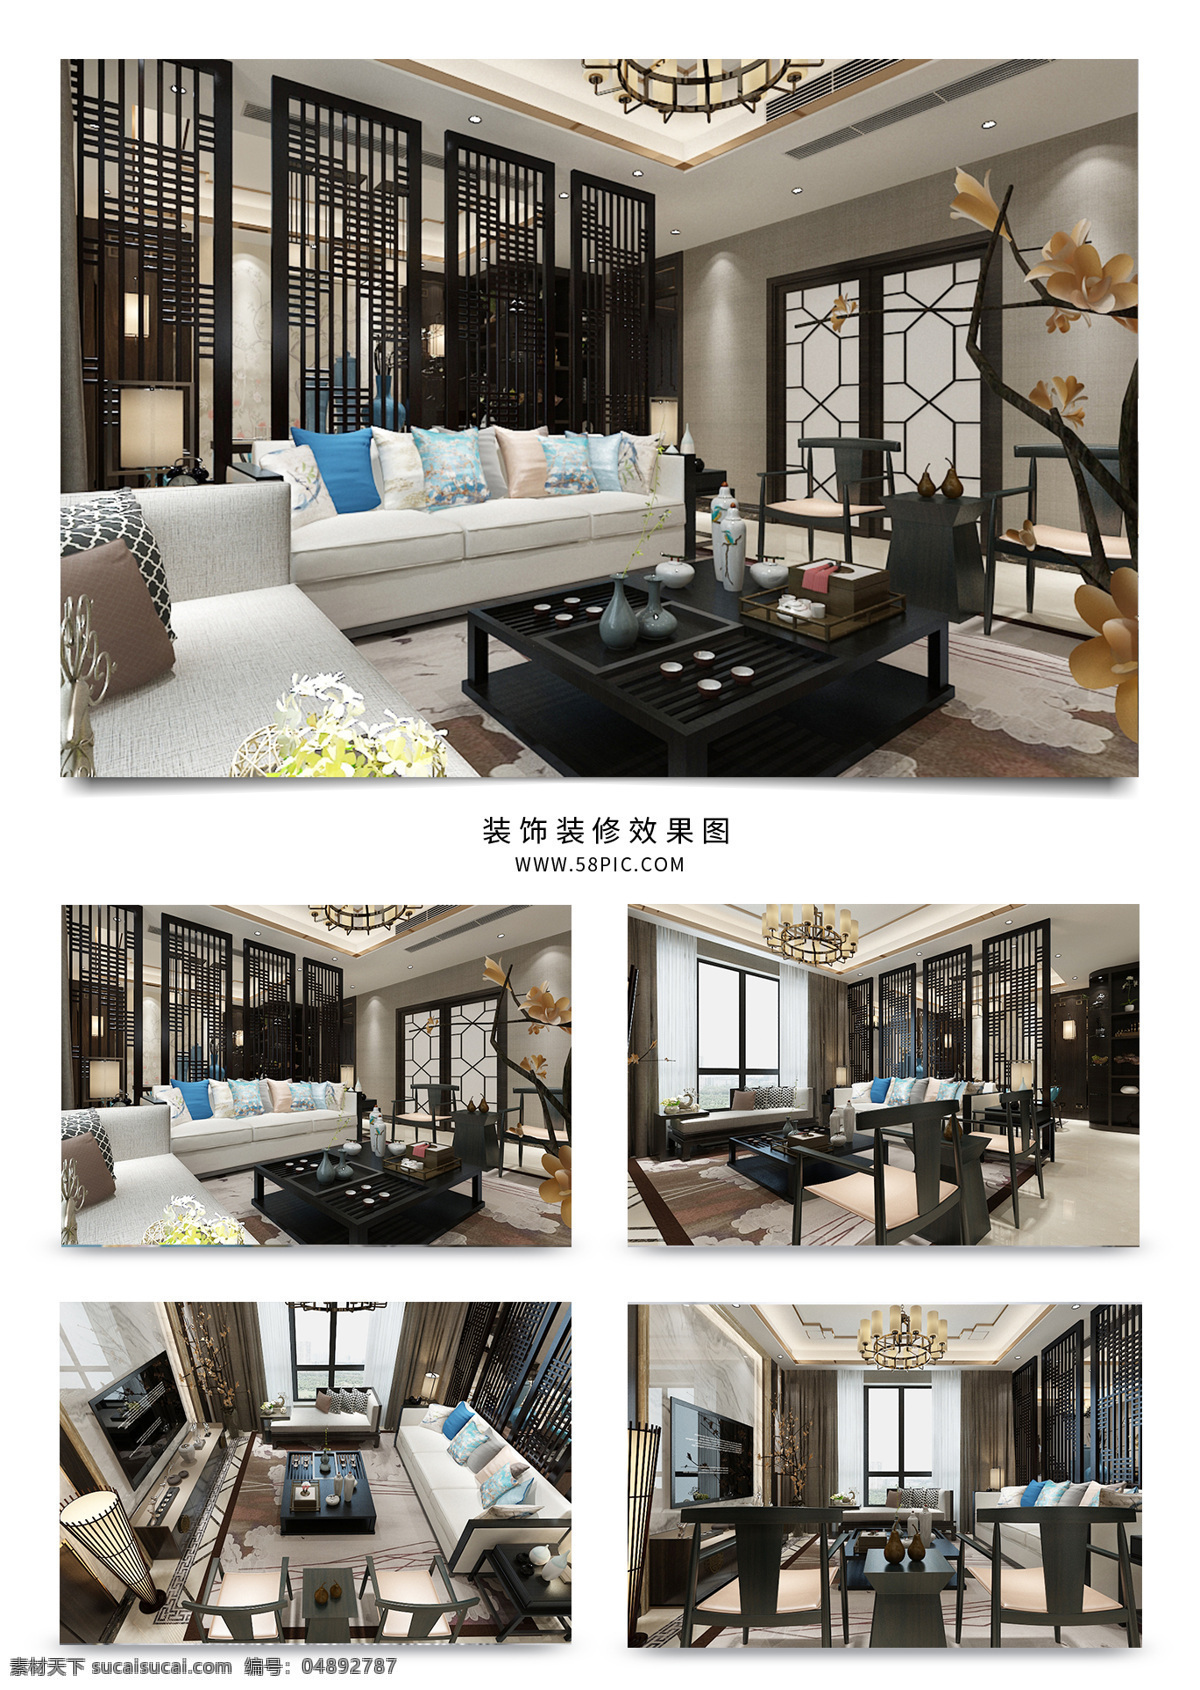 新 中式 风格 客厅 效果图 模型 沙发 屏风 吊顶 欧式 桌子 植物 茶几 现代 椅子 大理石 电视墙 挂画 吊灯